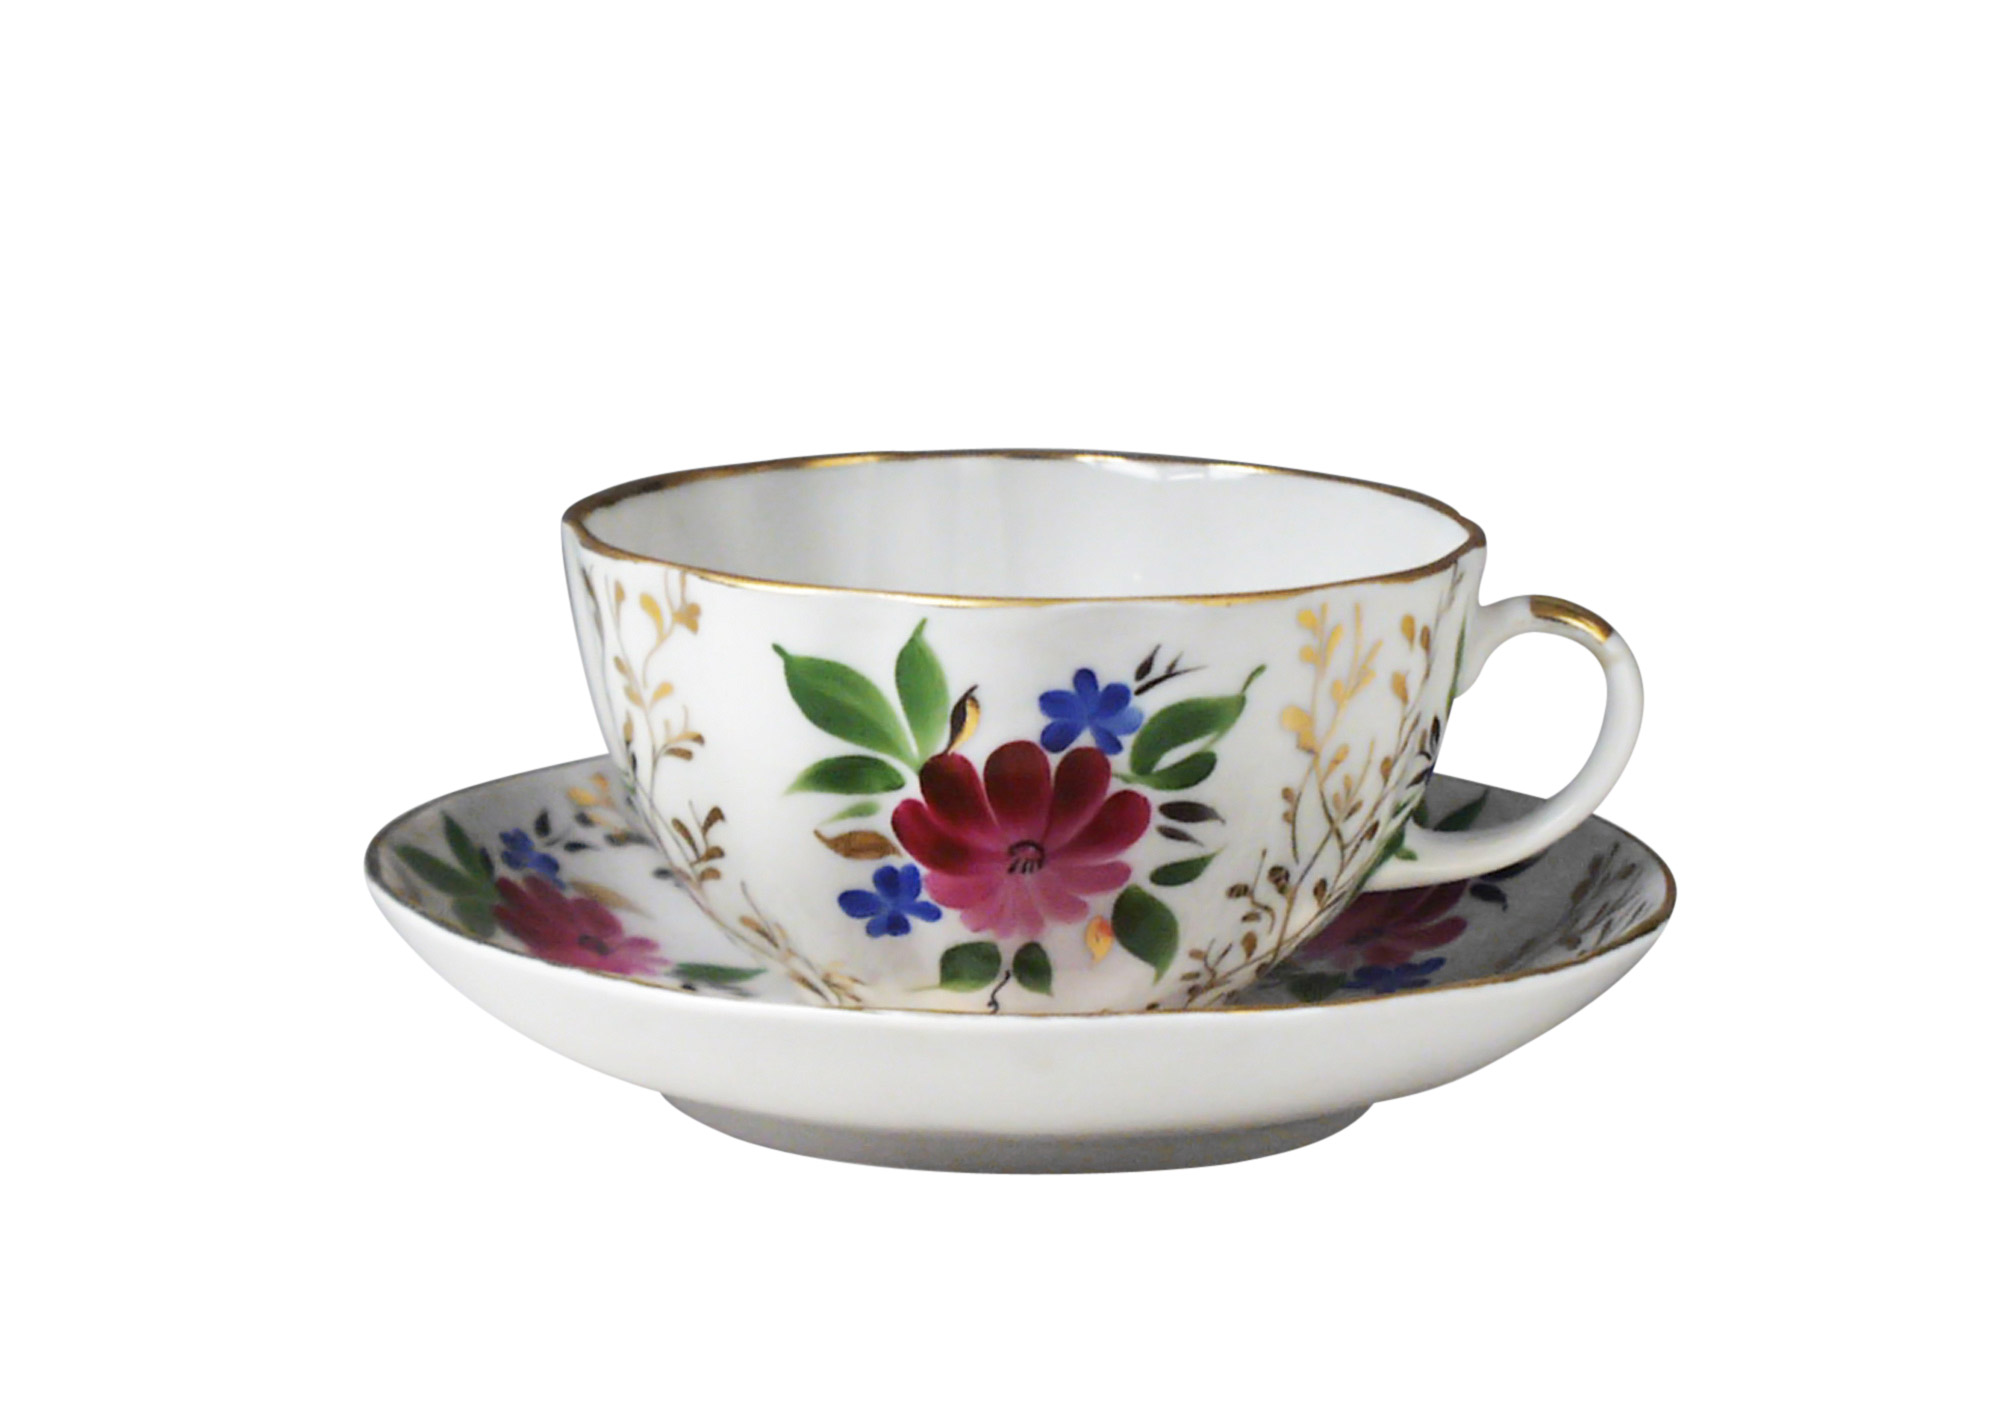 Buy Golden Grass Tea Cup and Saucer at GoldenCockerel.com